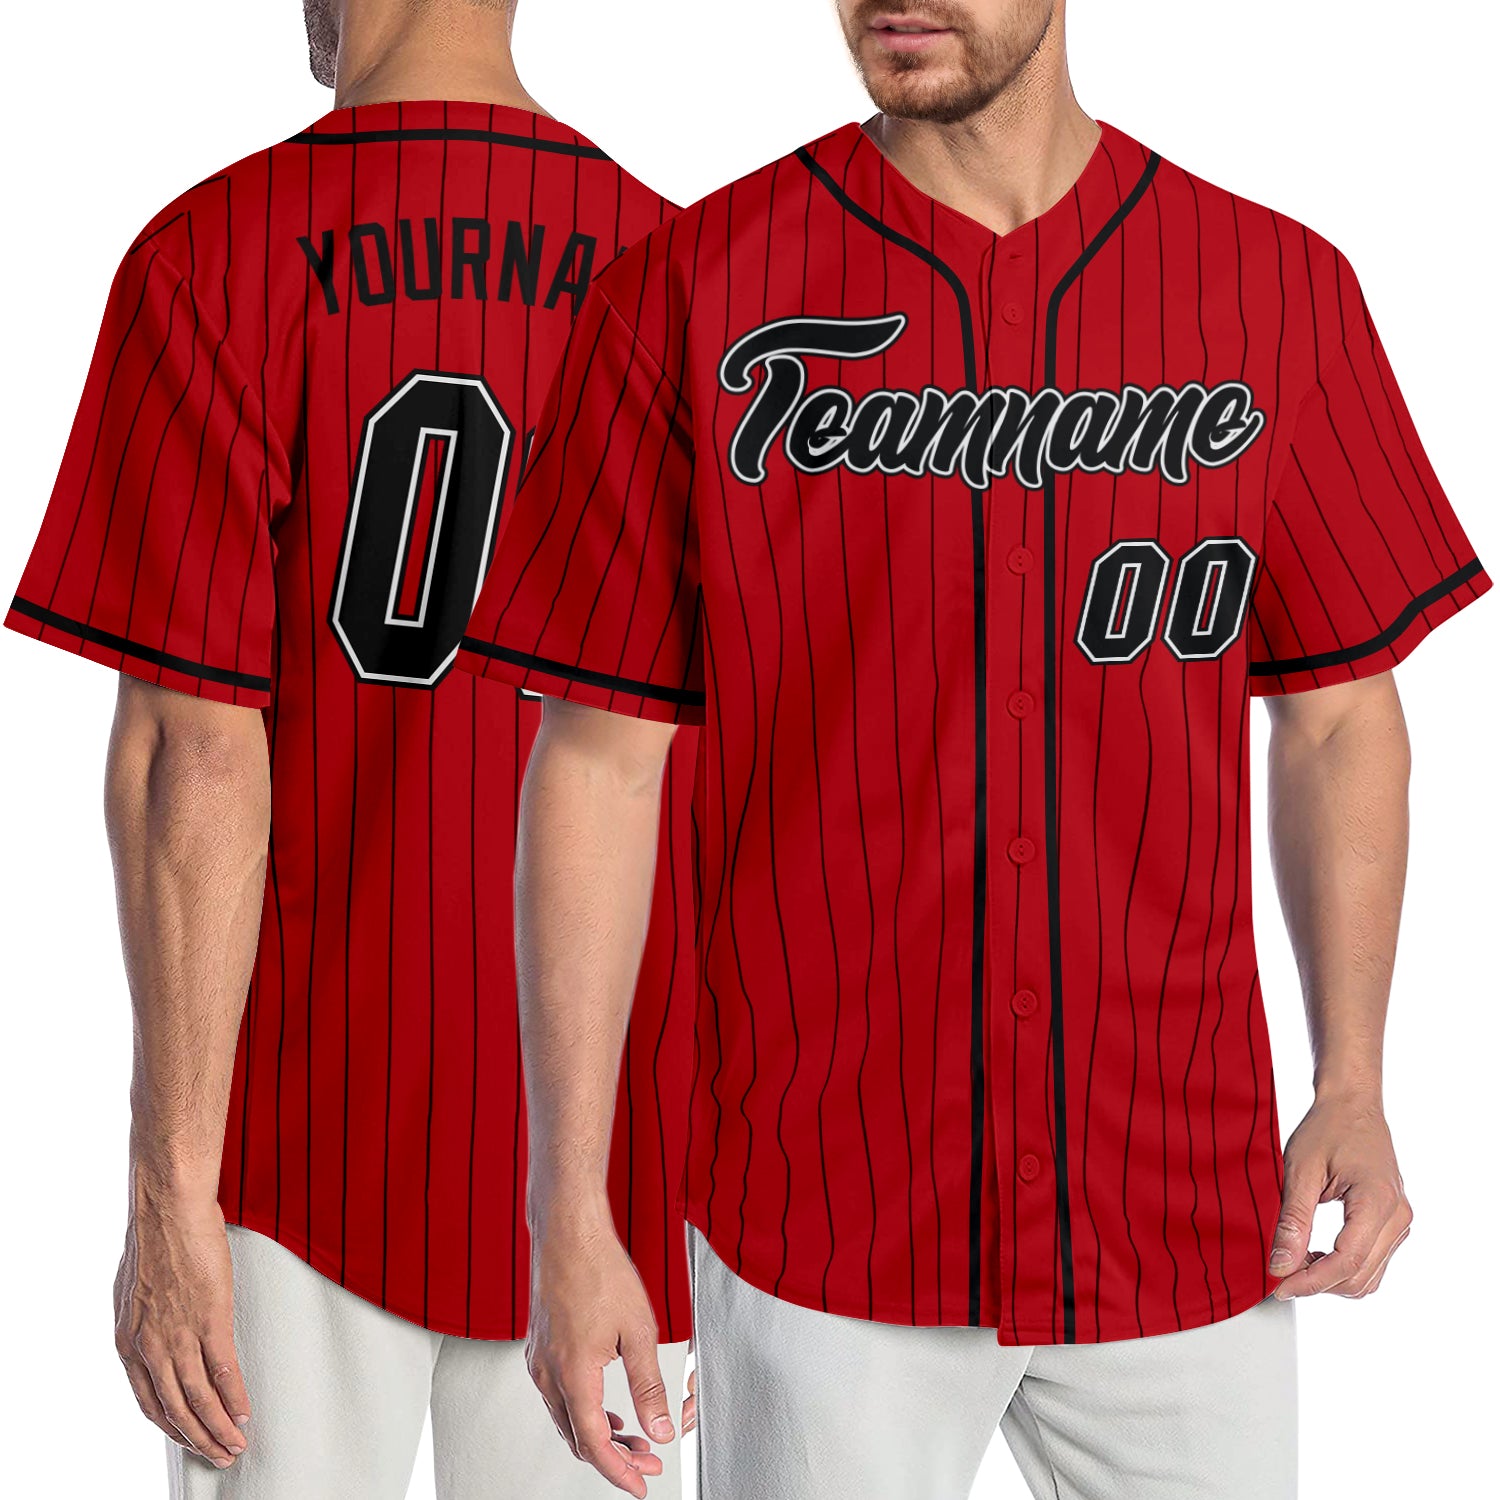 Custom Baseball Jersey Red White-Black